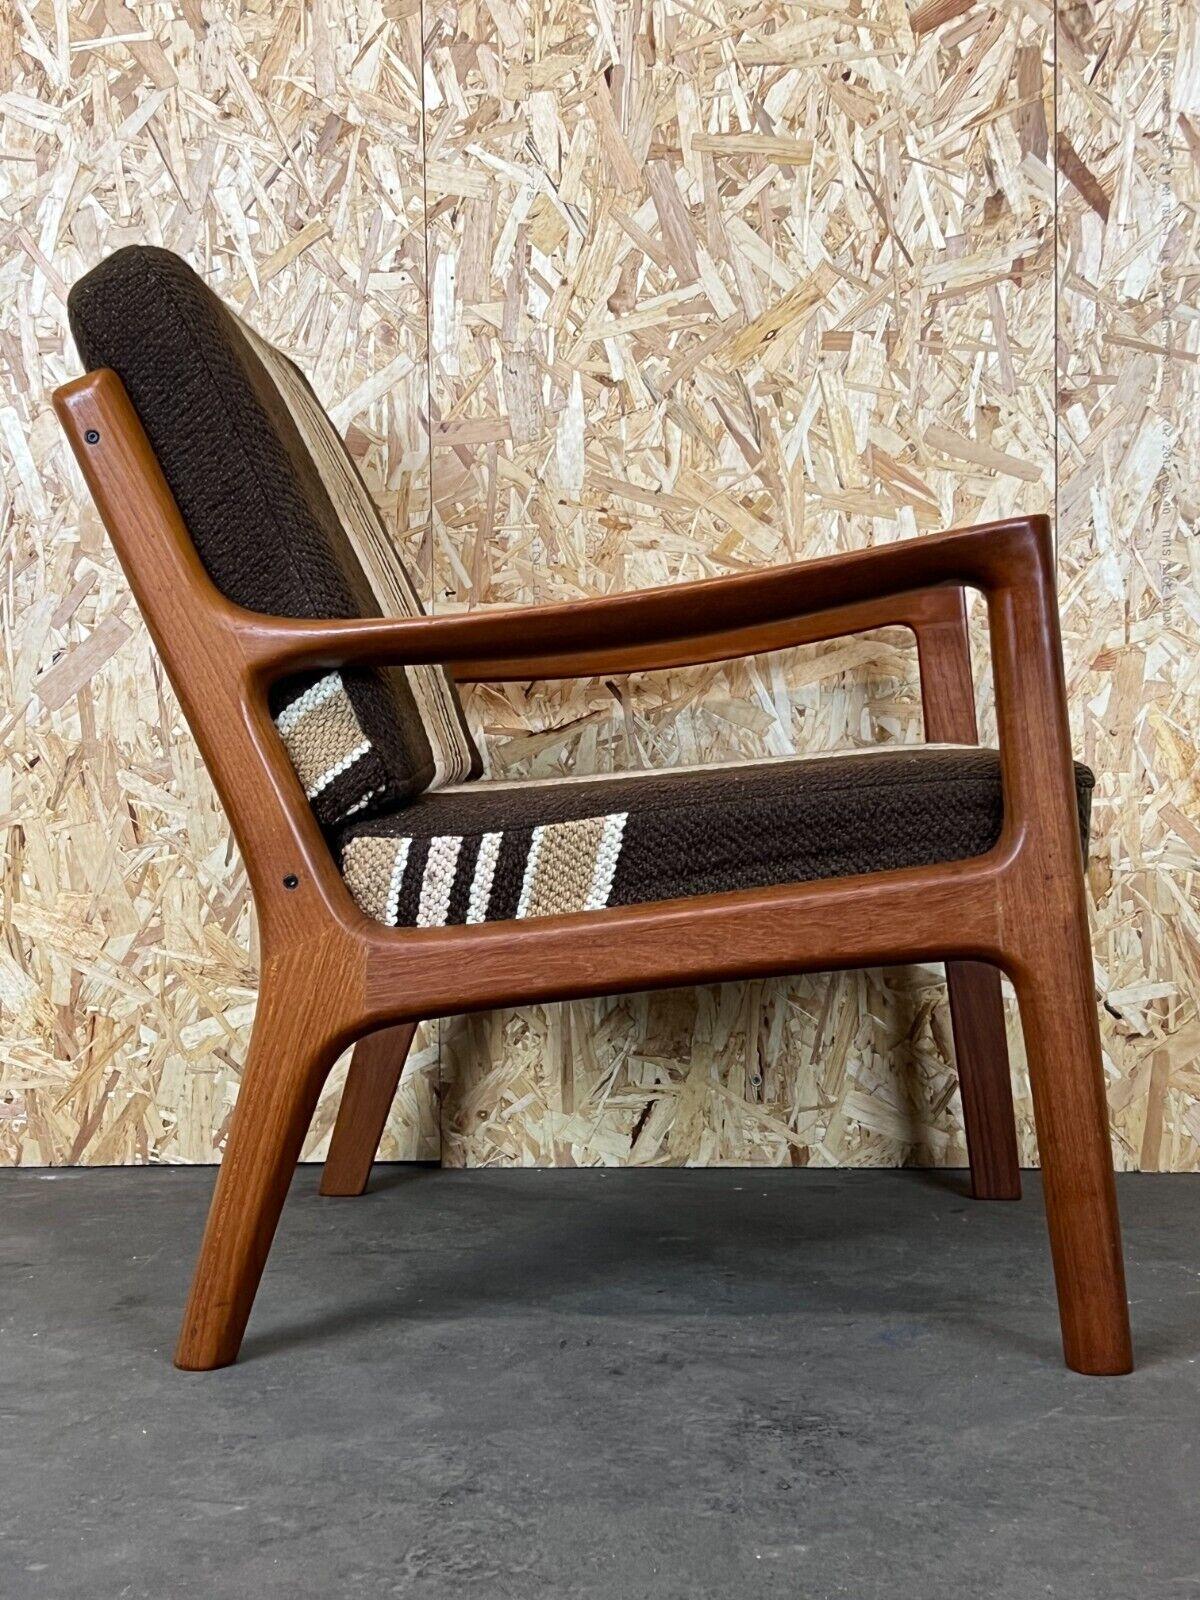 1960s-1970s Teak Easy Chair Ole Wanscher Cado France & Son Denmark 5